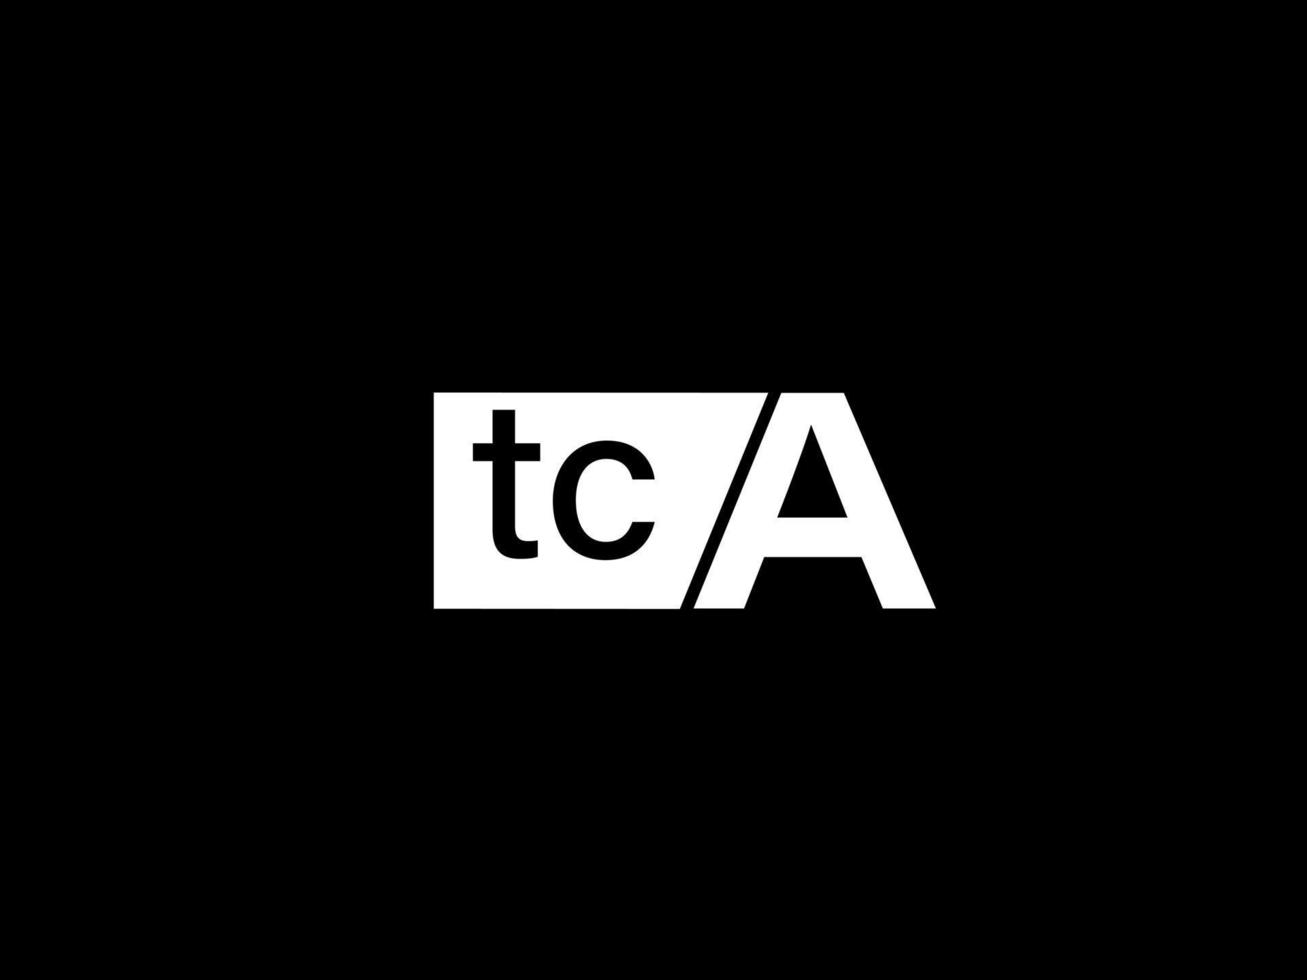 logo tca et art vectoriel de conception graphique, icônes isolées sur fond noir